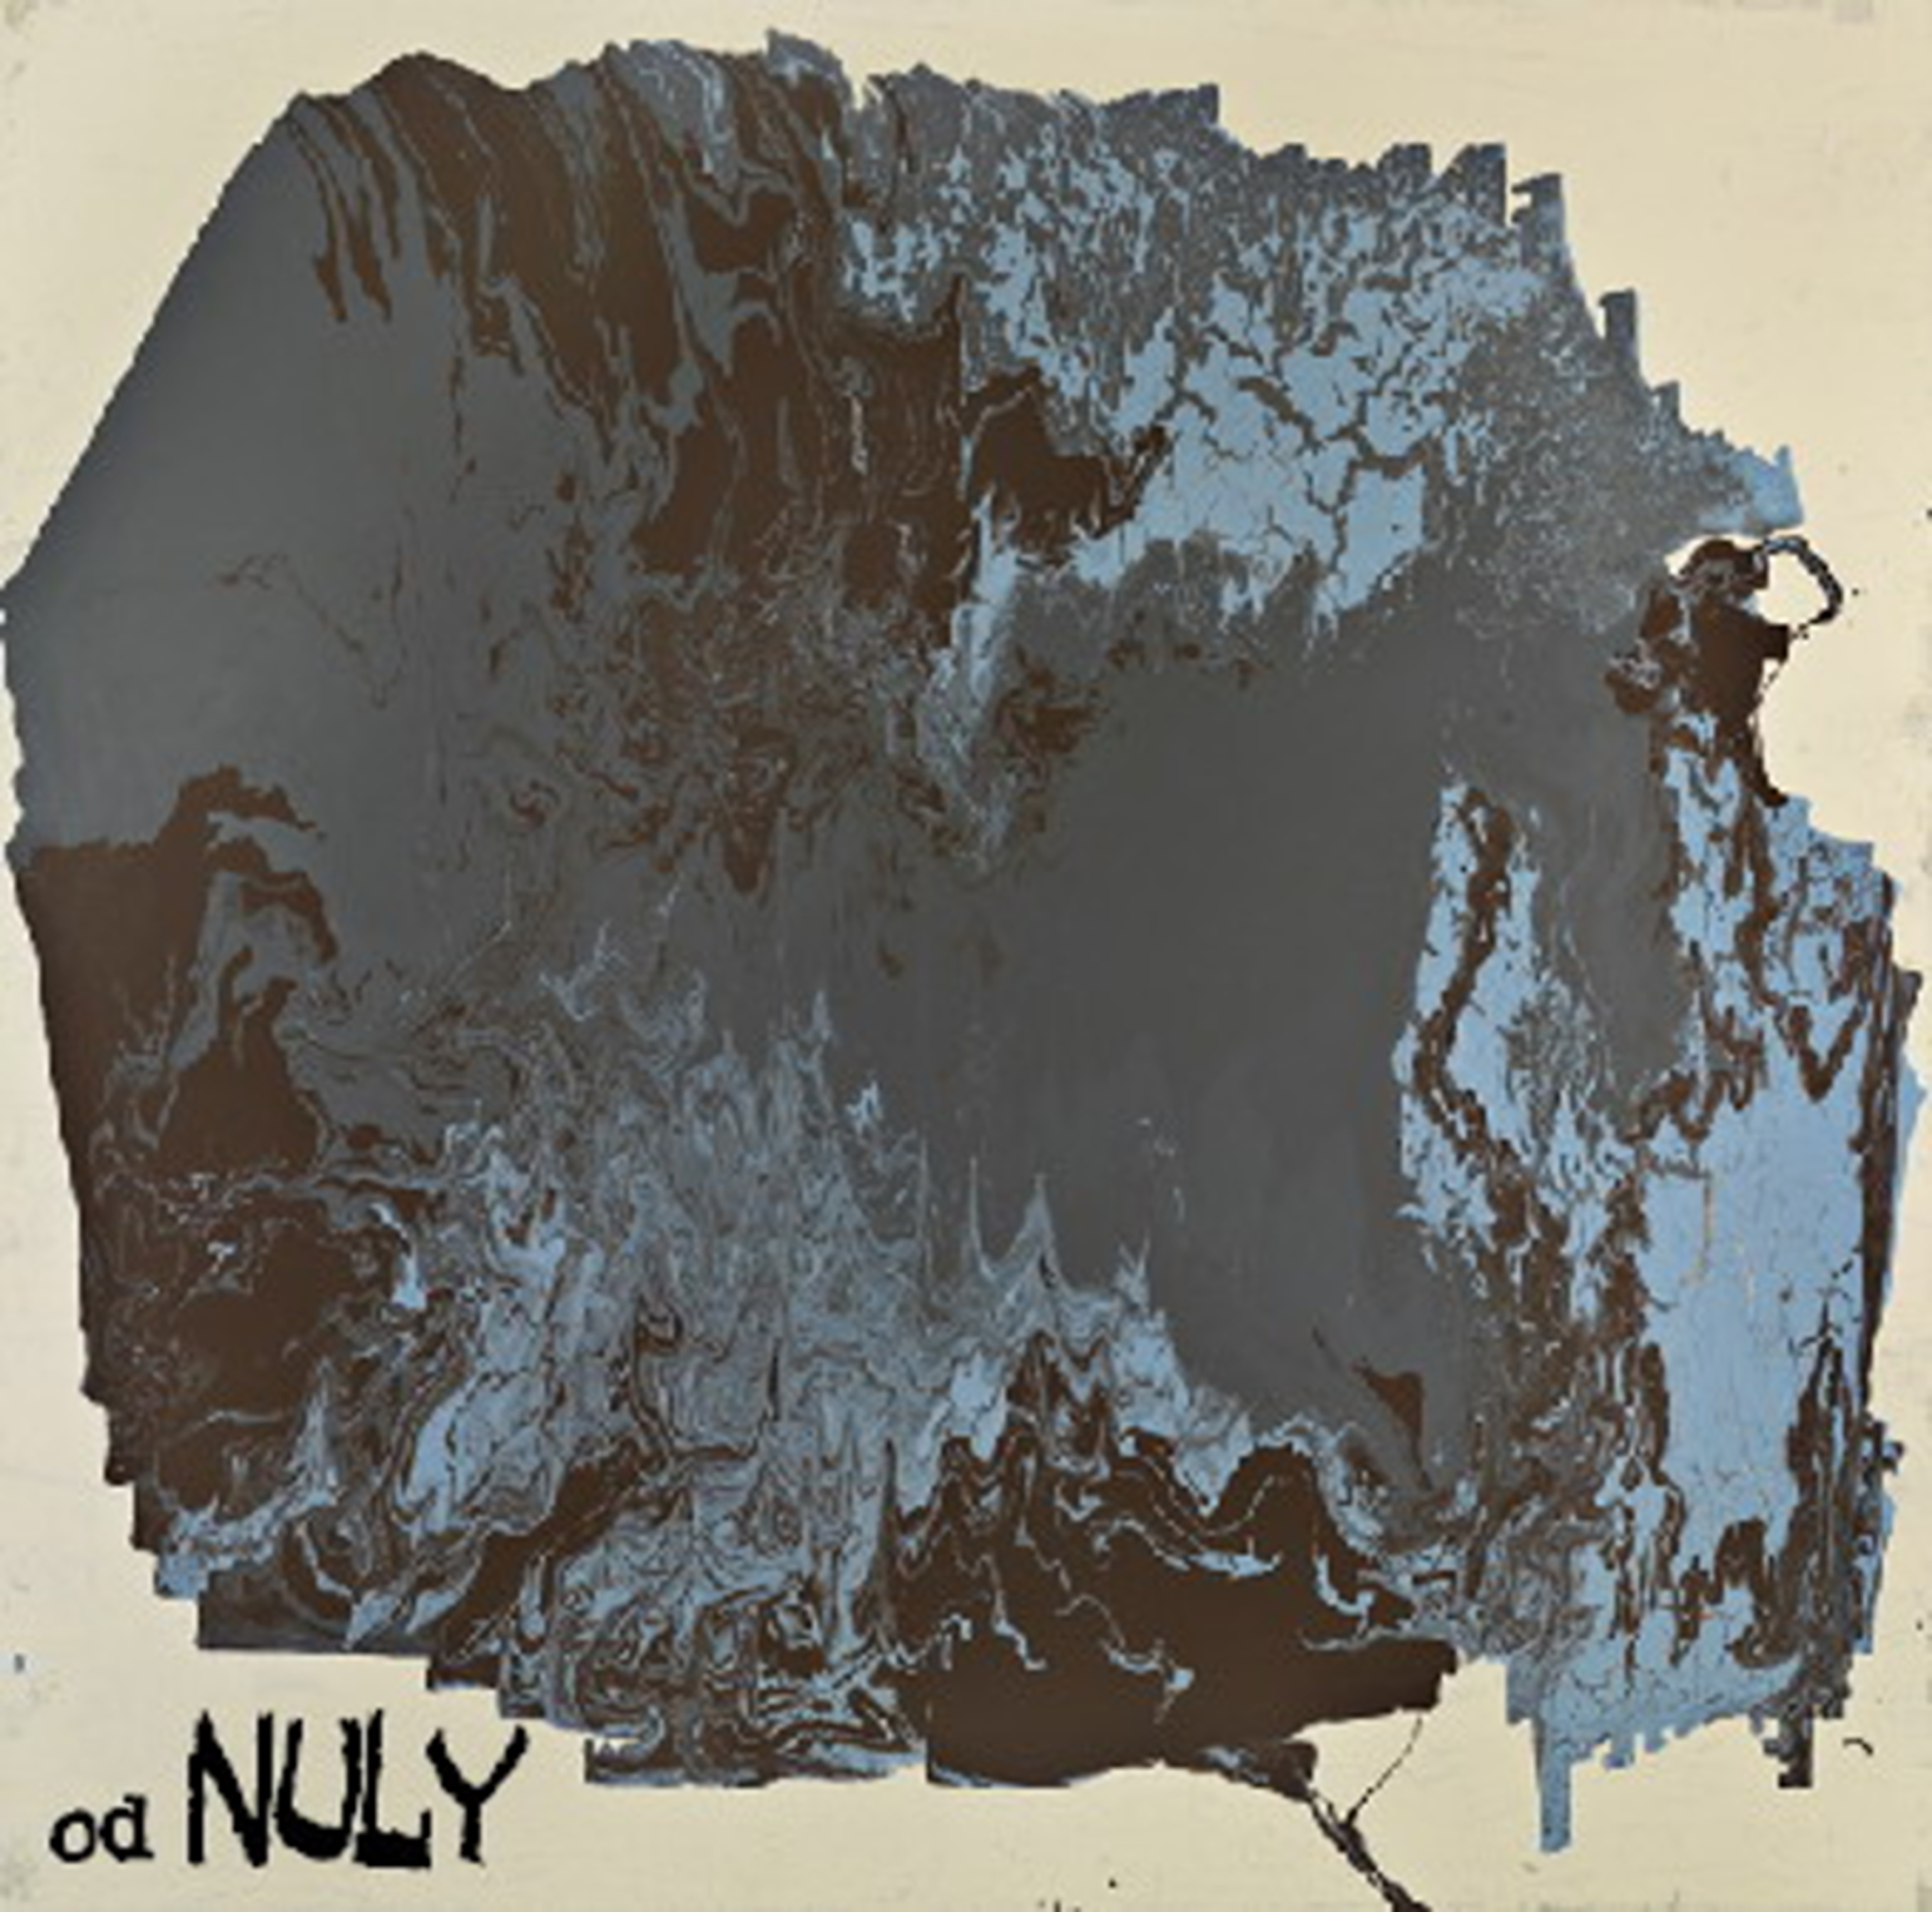 Nuly - od (2008)